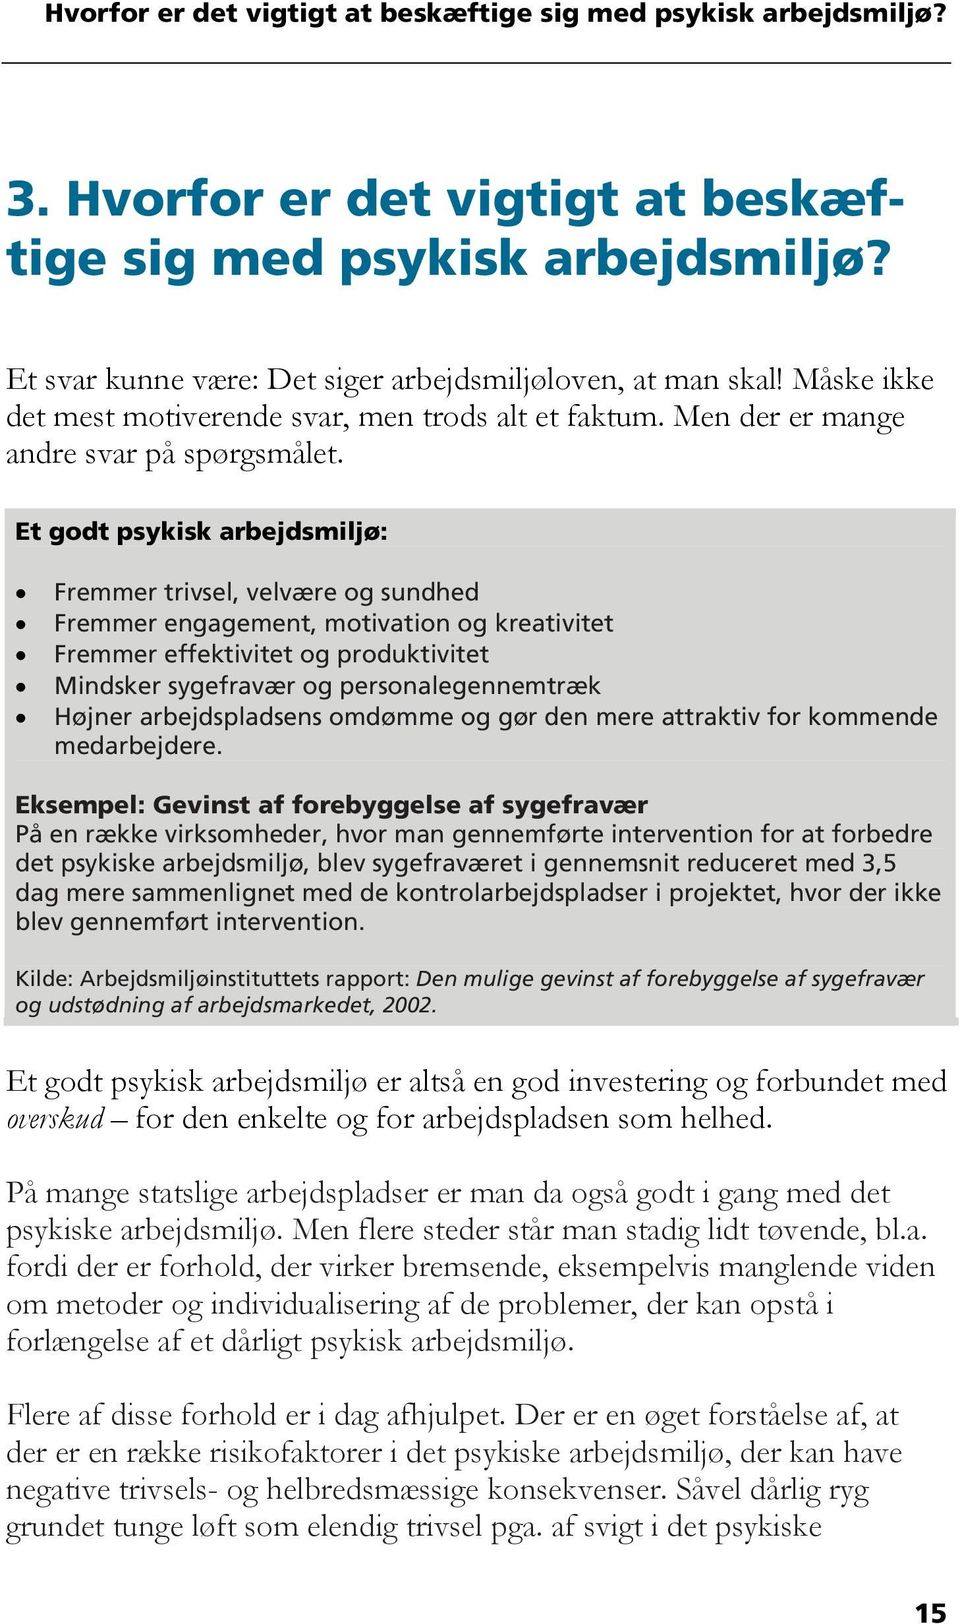 Håndbog om psykisk arbejdsmiljø i praksis. 2. udgave - PDF Gratis download